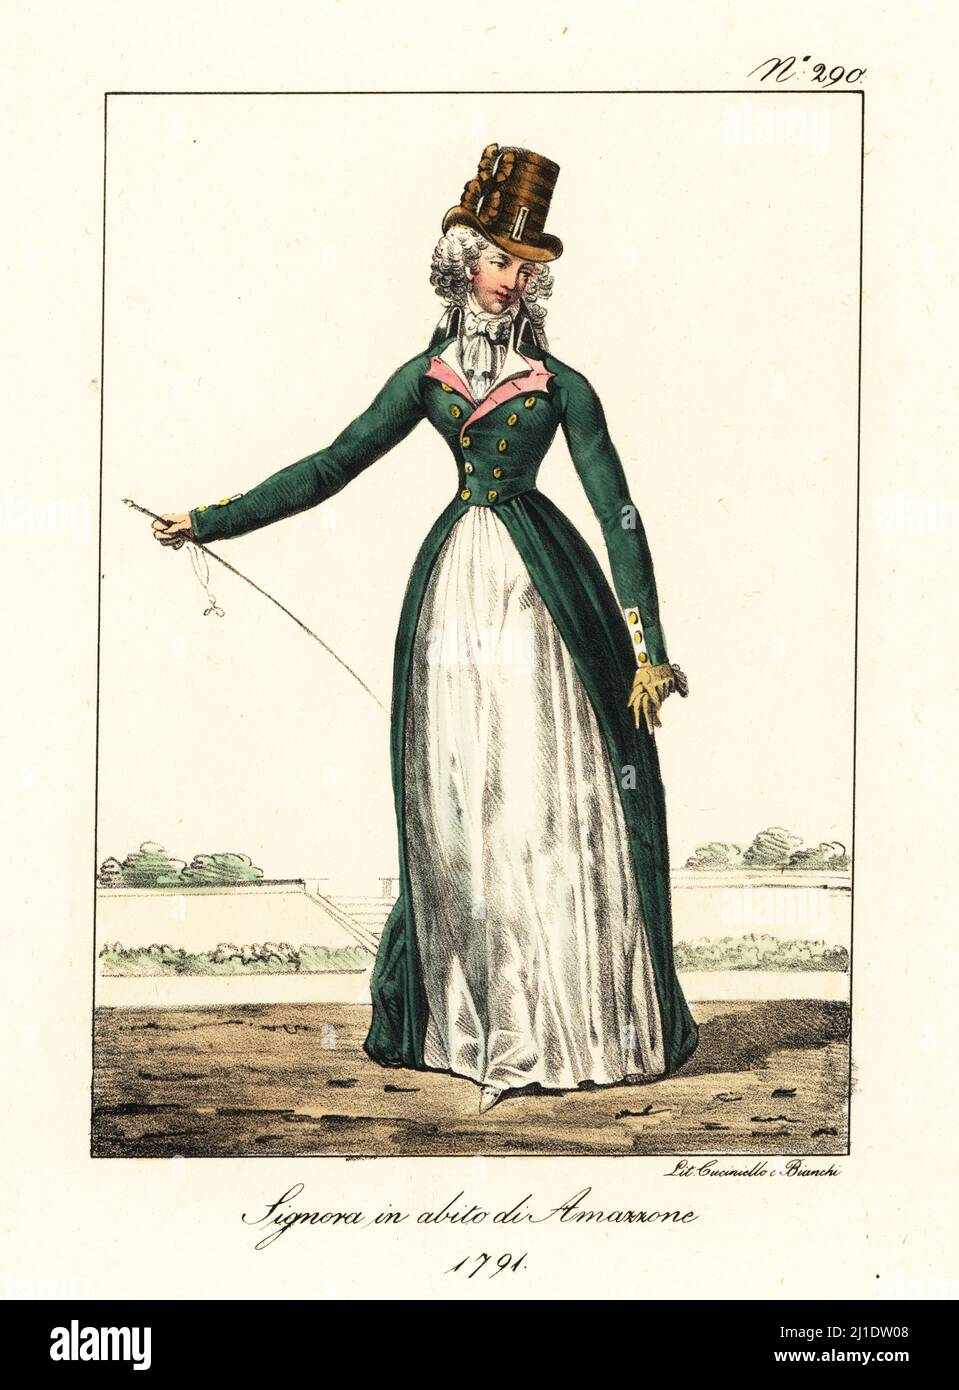 Donna francese alla moda in vestito da guida, epoca rivoluzionaria, 1791.  Indossa un cappello con scarafaggi, cravat, lungo rosso verde, gonne  bianche, guanti di protezione. Dame en Habit d'Amazone, 1791 litografia a